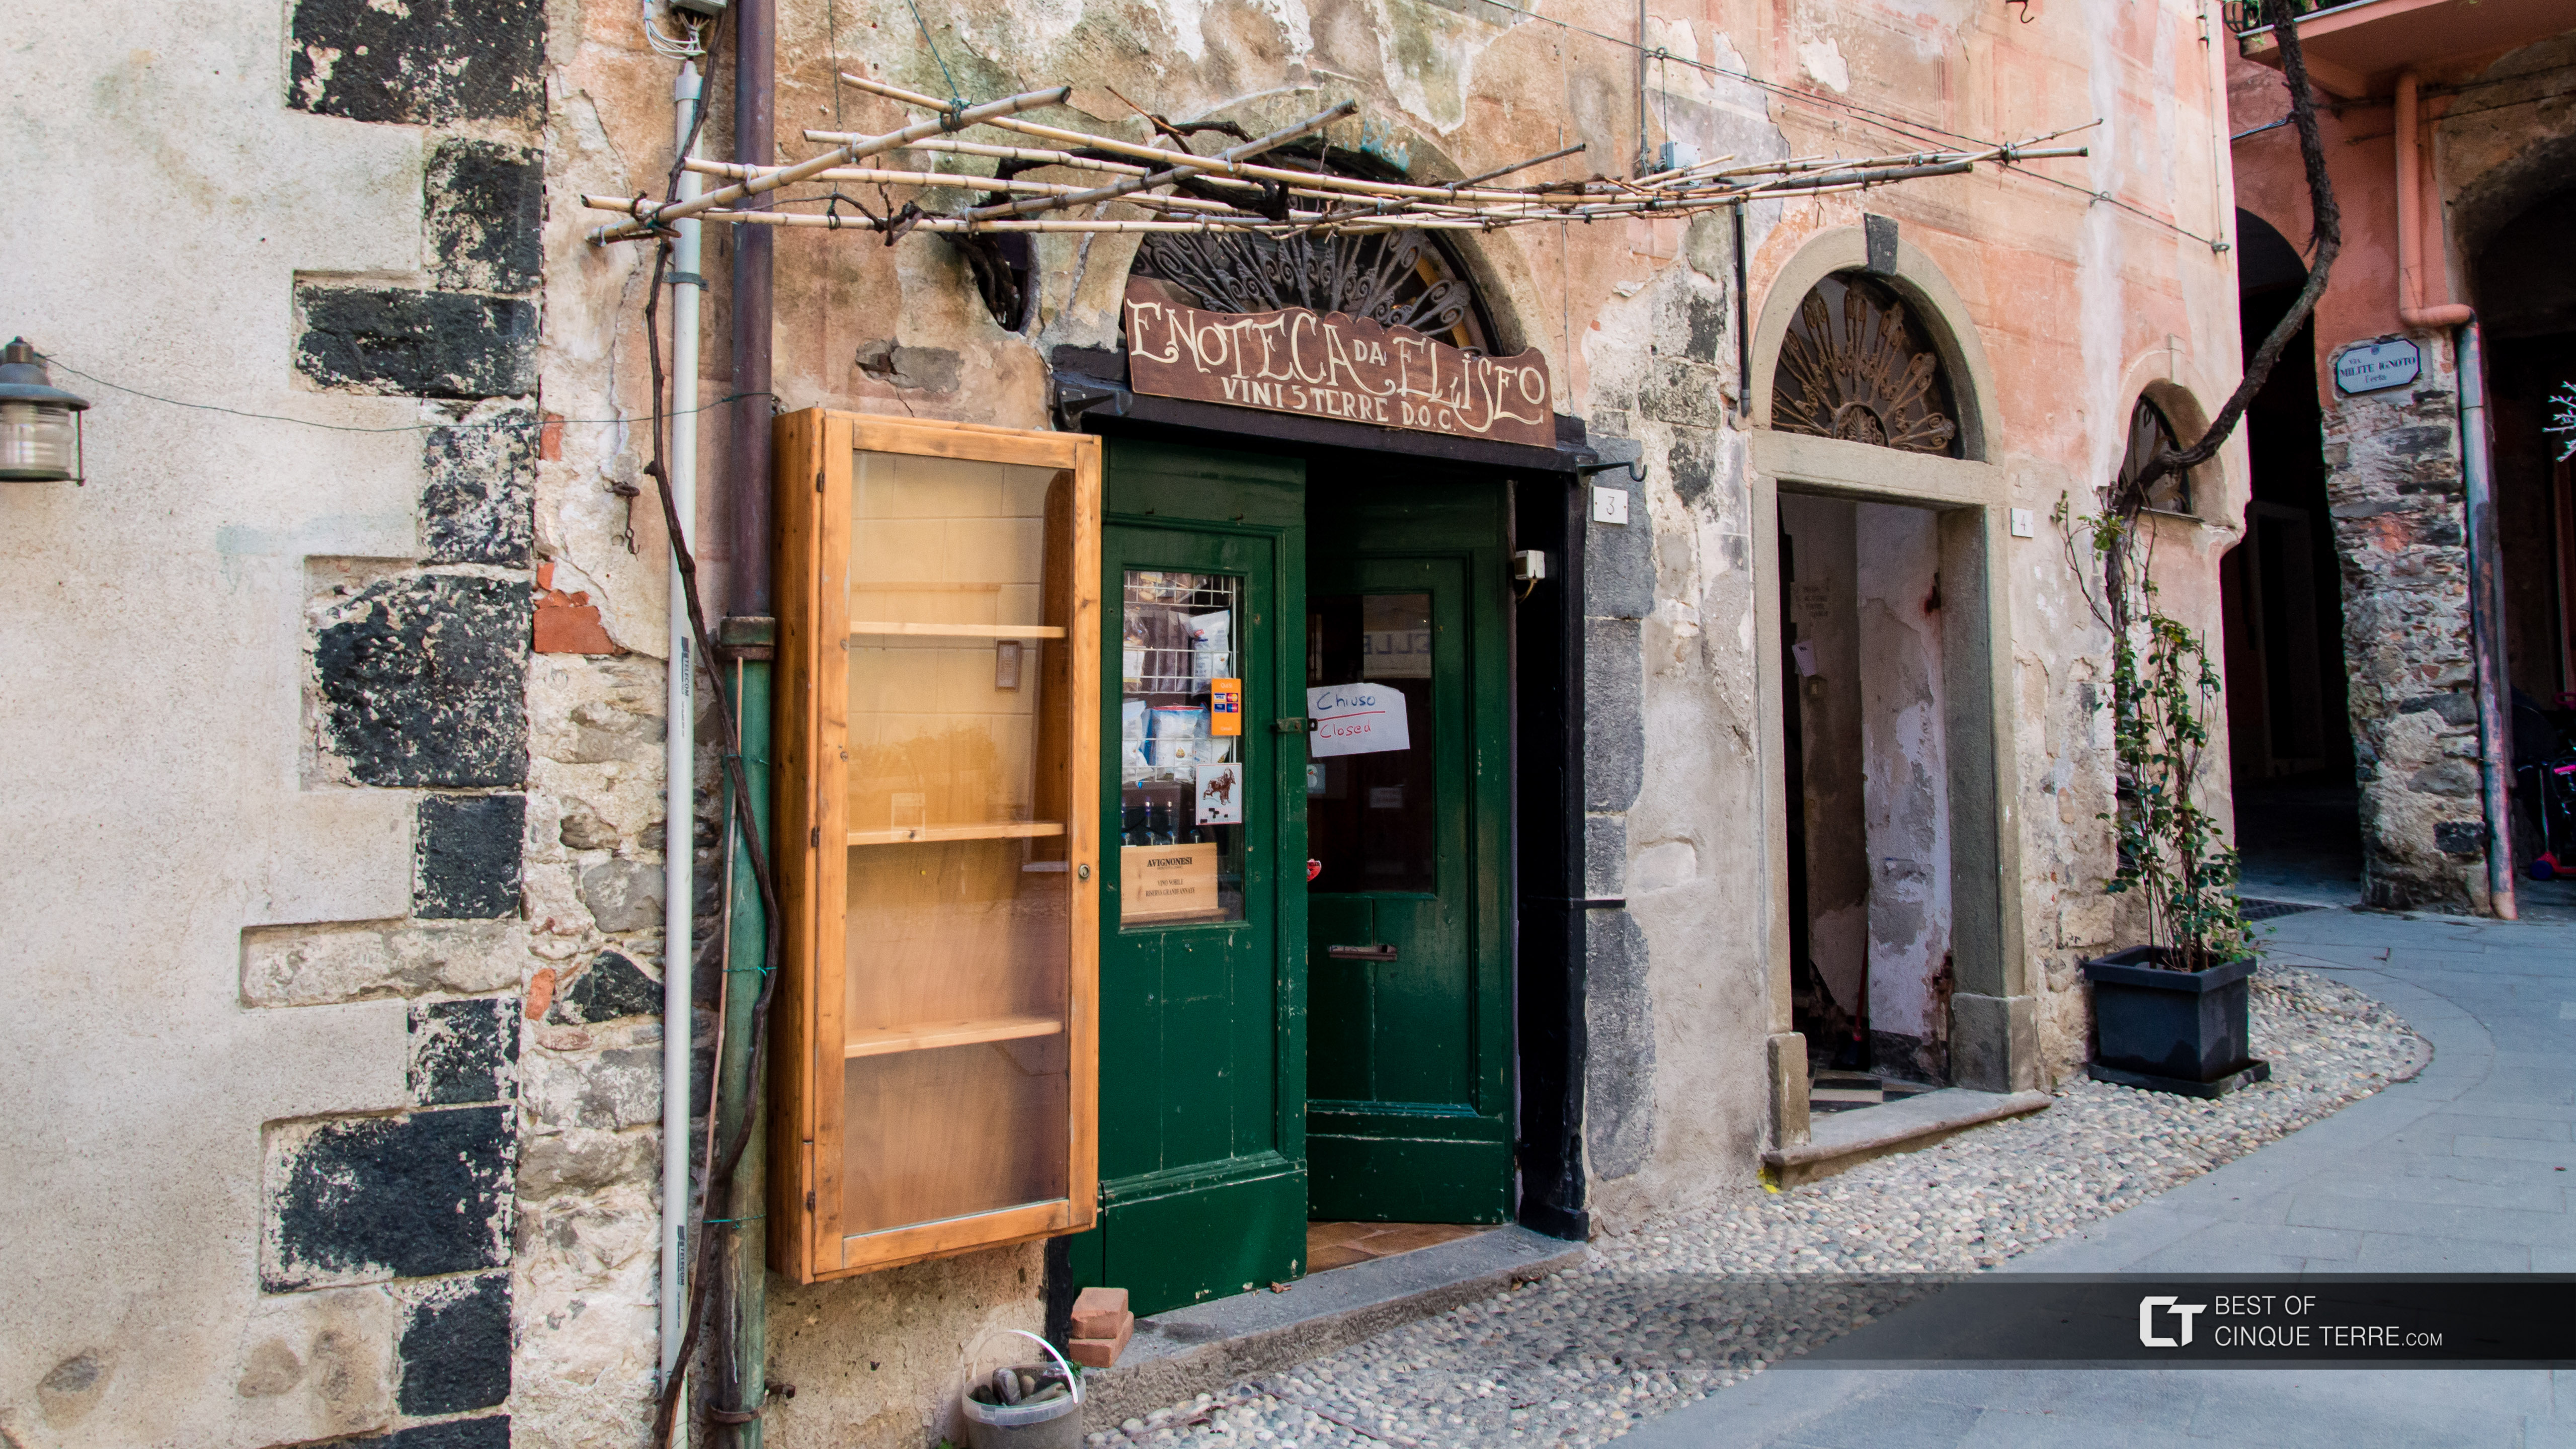 Tienda de vinos “Da Eliseo”, Monterosso al Mare, Cinque Terre, Italia